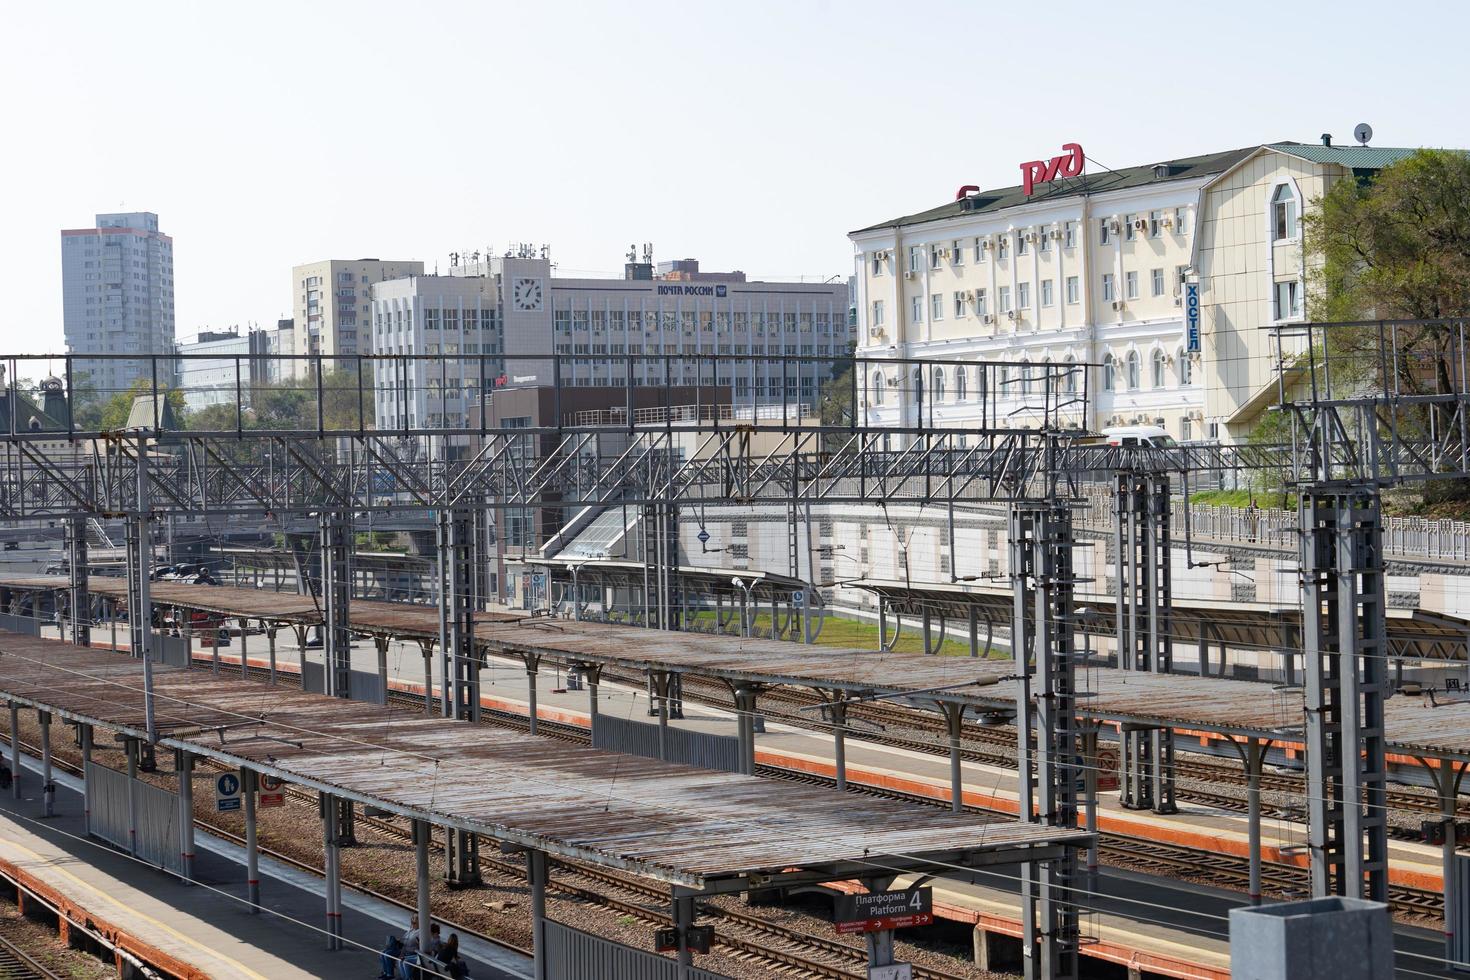 vladivostok, russia-29 settembre 2019 -paesaggio urbano con vista sulla stazione ferroviaria. foto